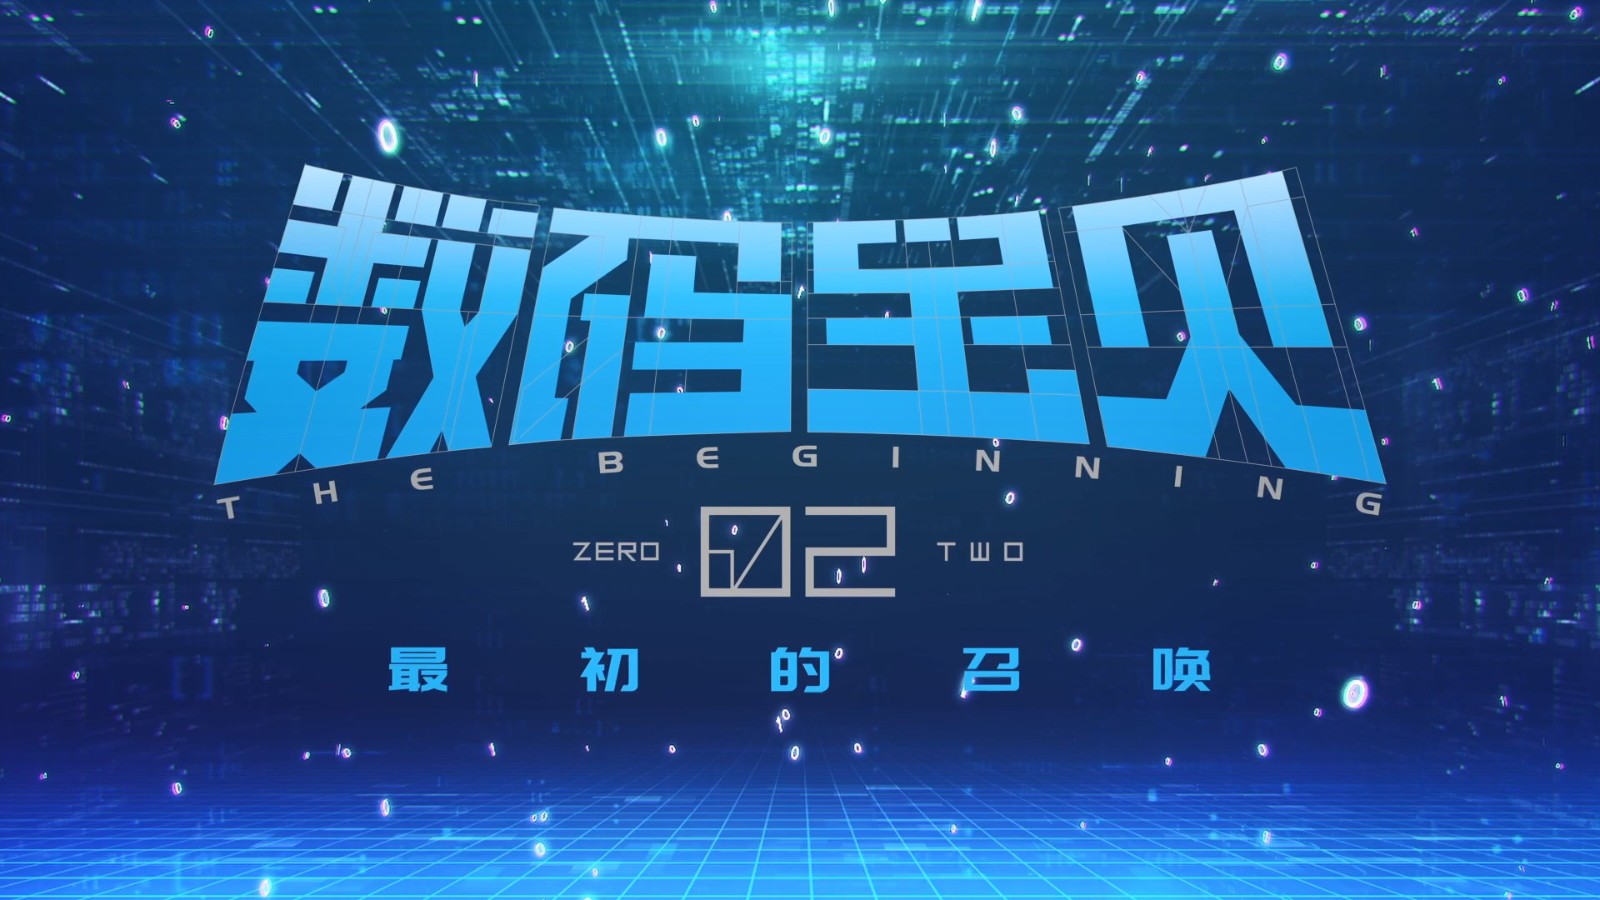 《数码宝贝02最初的召唤》发布终极预告 4月20日上映